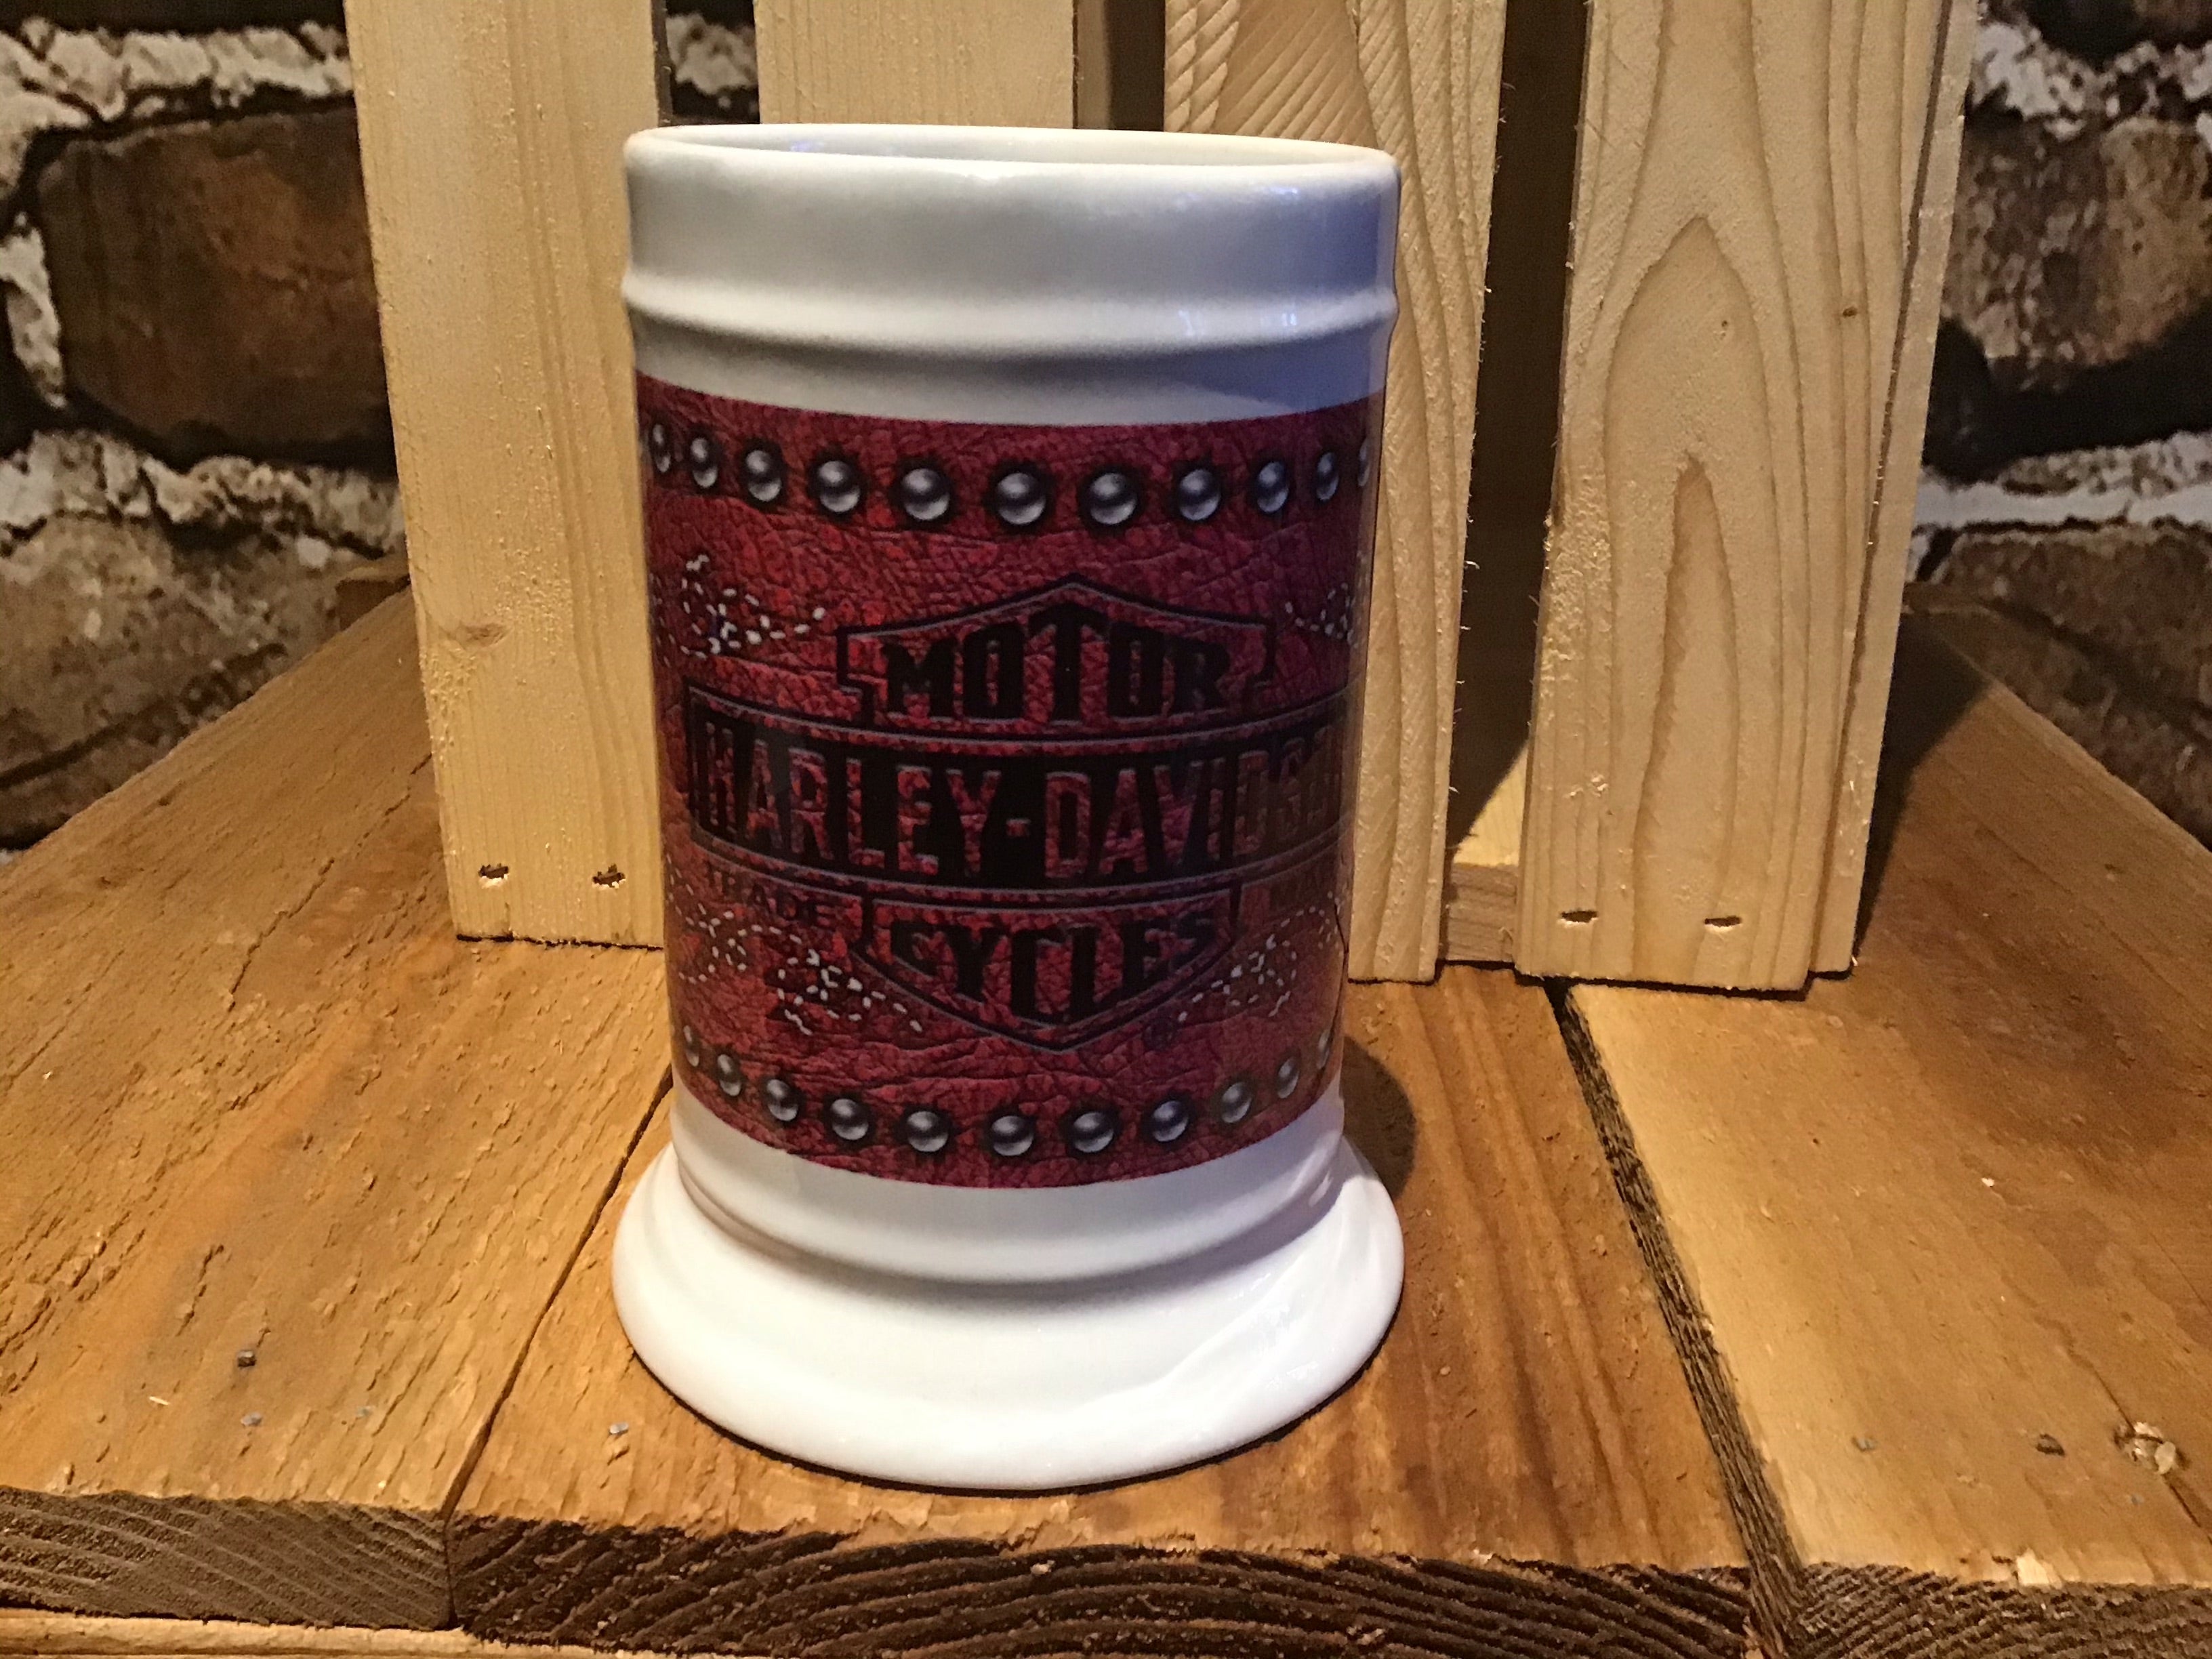 Harley Davidson mug cup drink holder